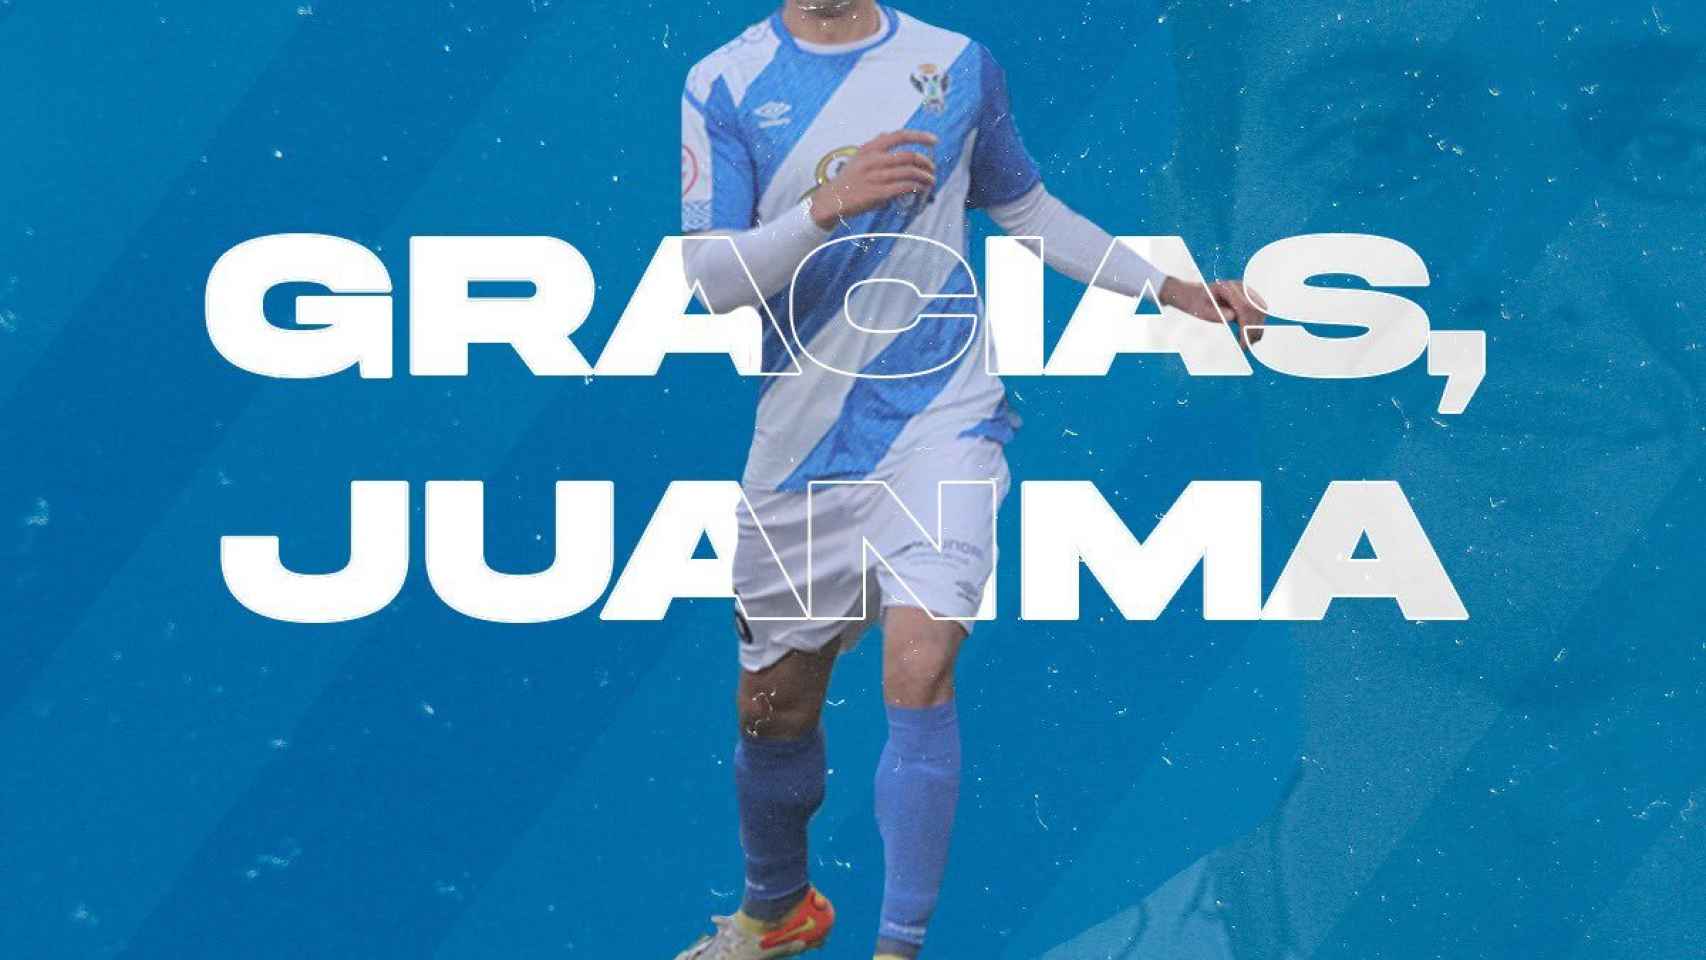 El CF Talavera confirma la salida de Juanma, que ficha por el Águilas